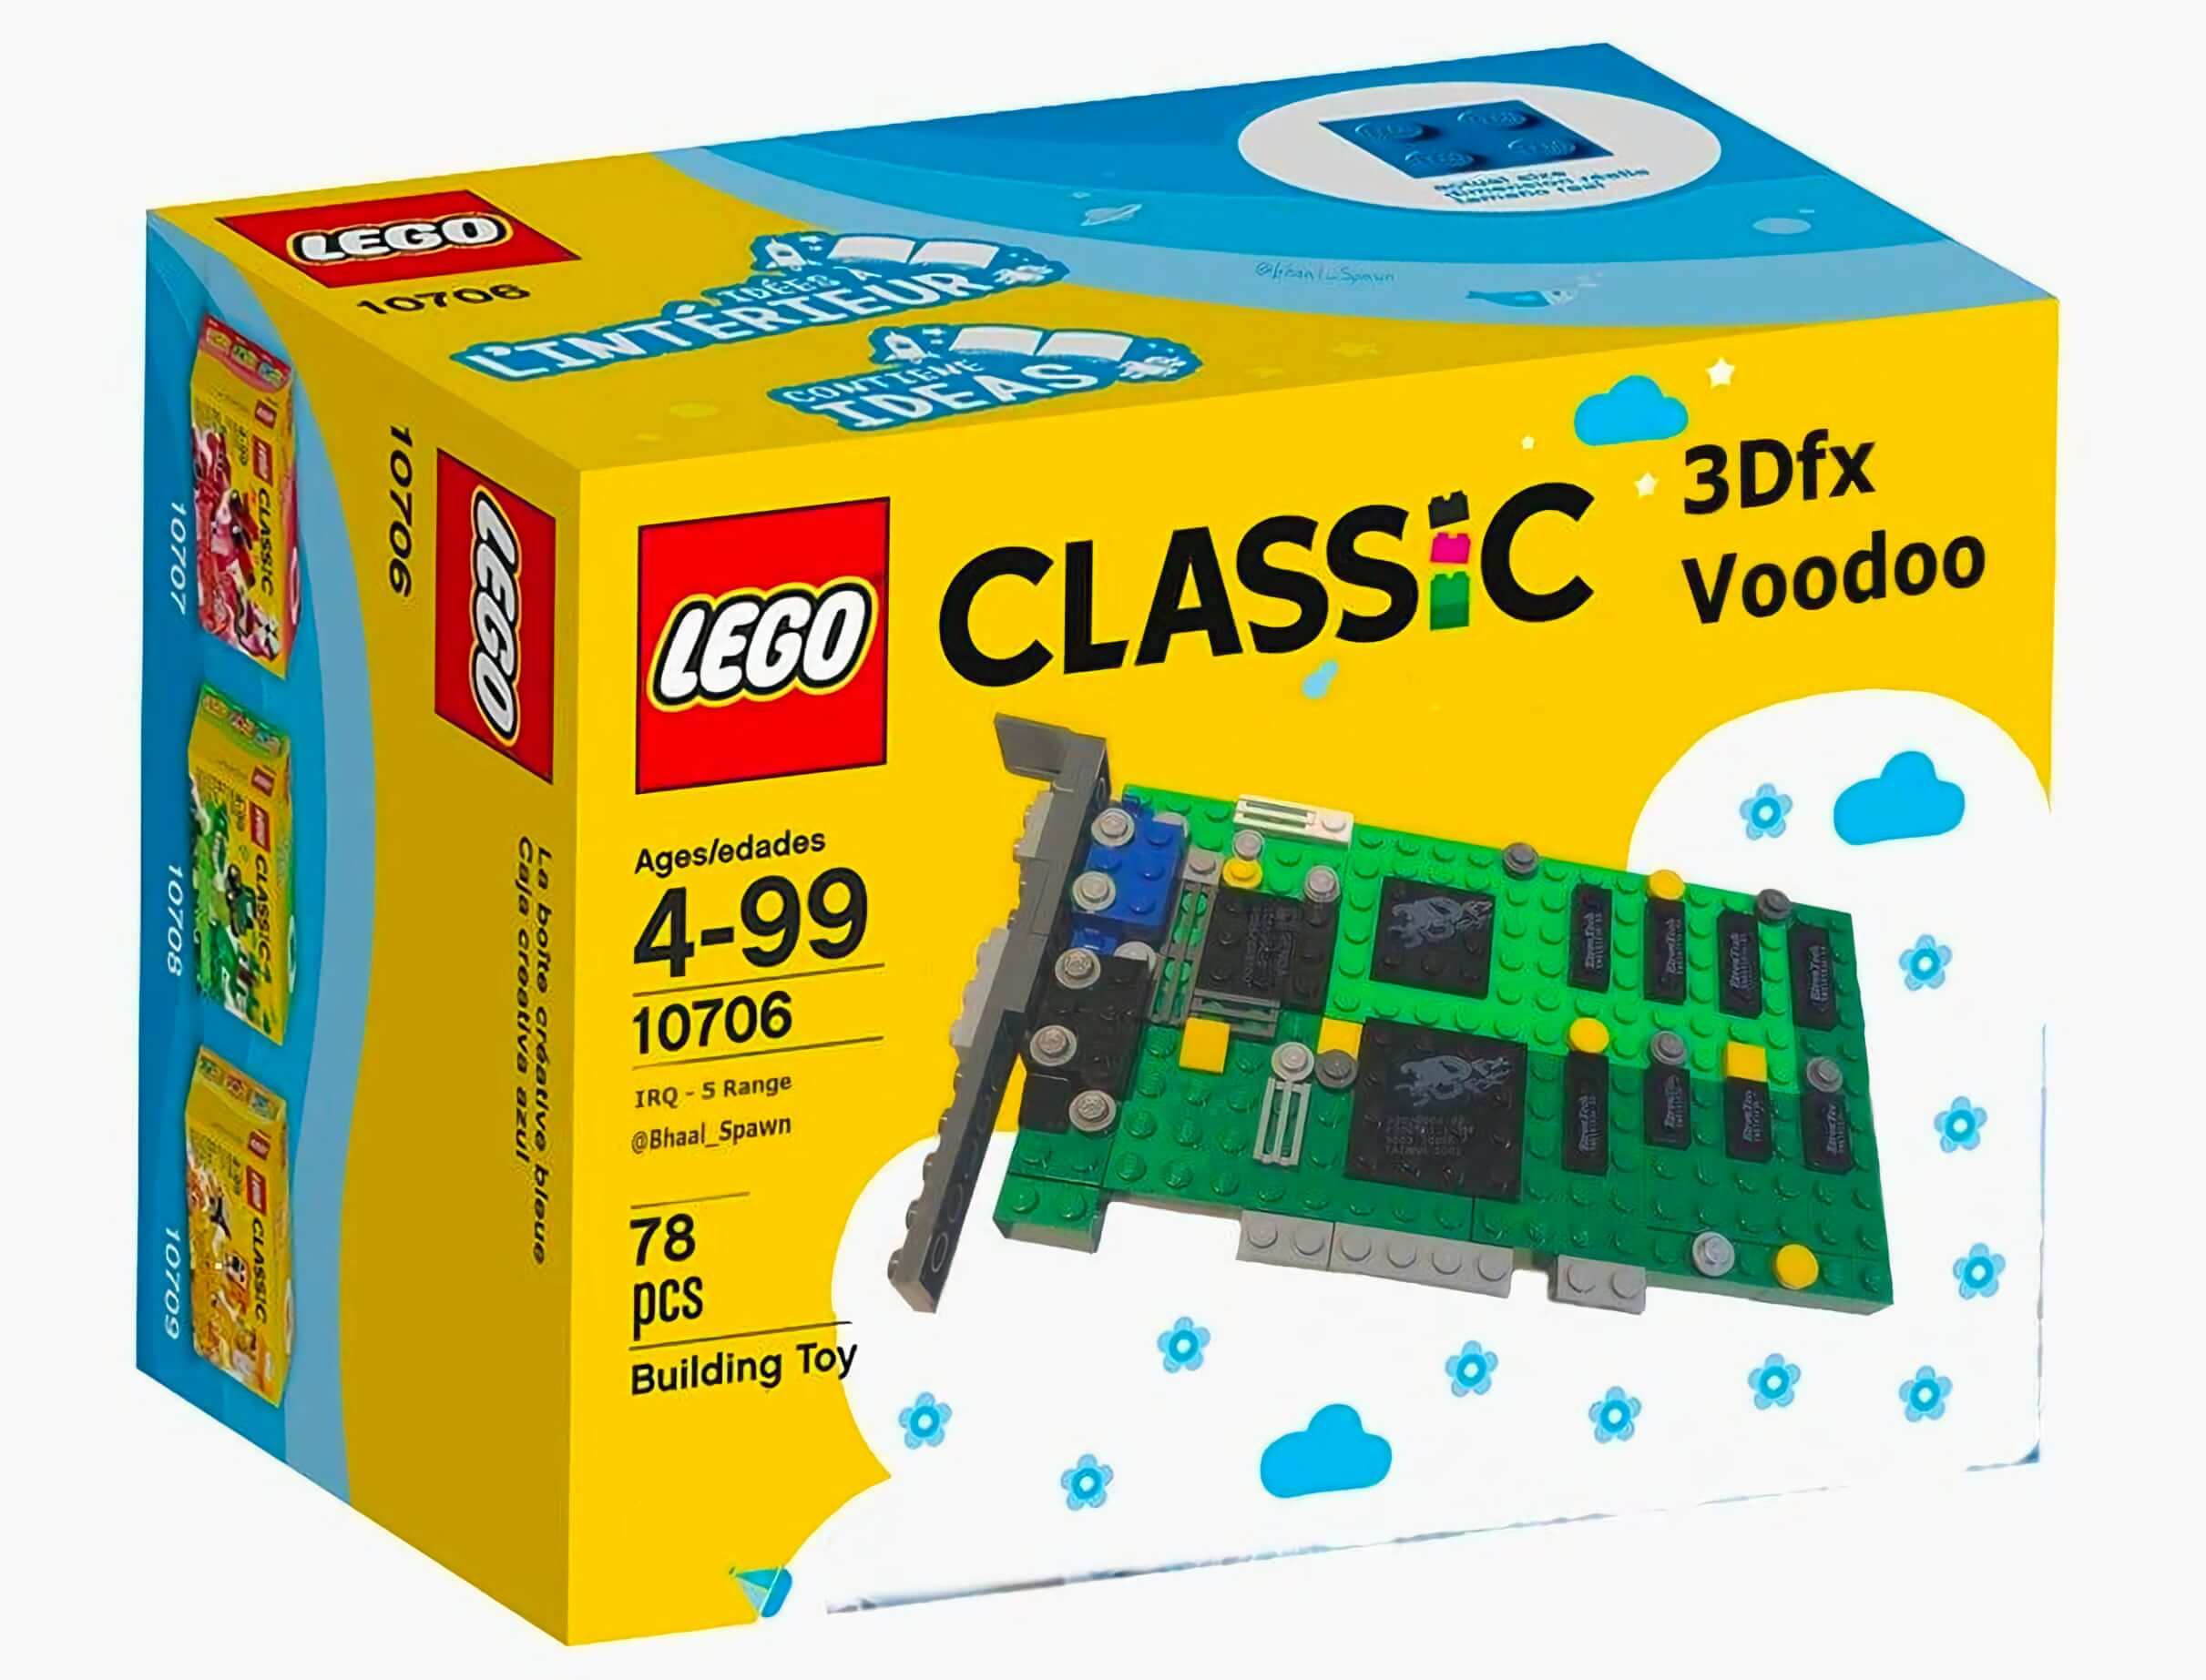 3Dfx Voodoo 3D grafik kartı LEGO ile canlanıyor